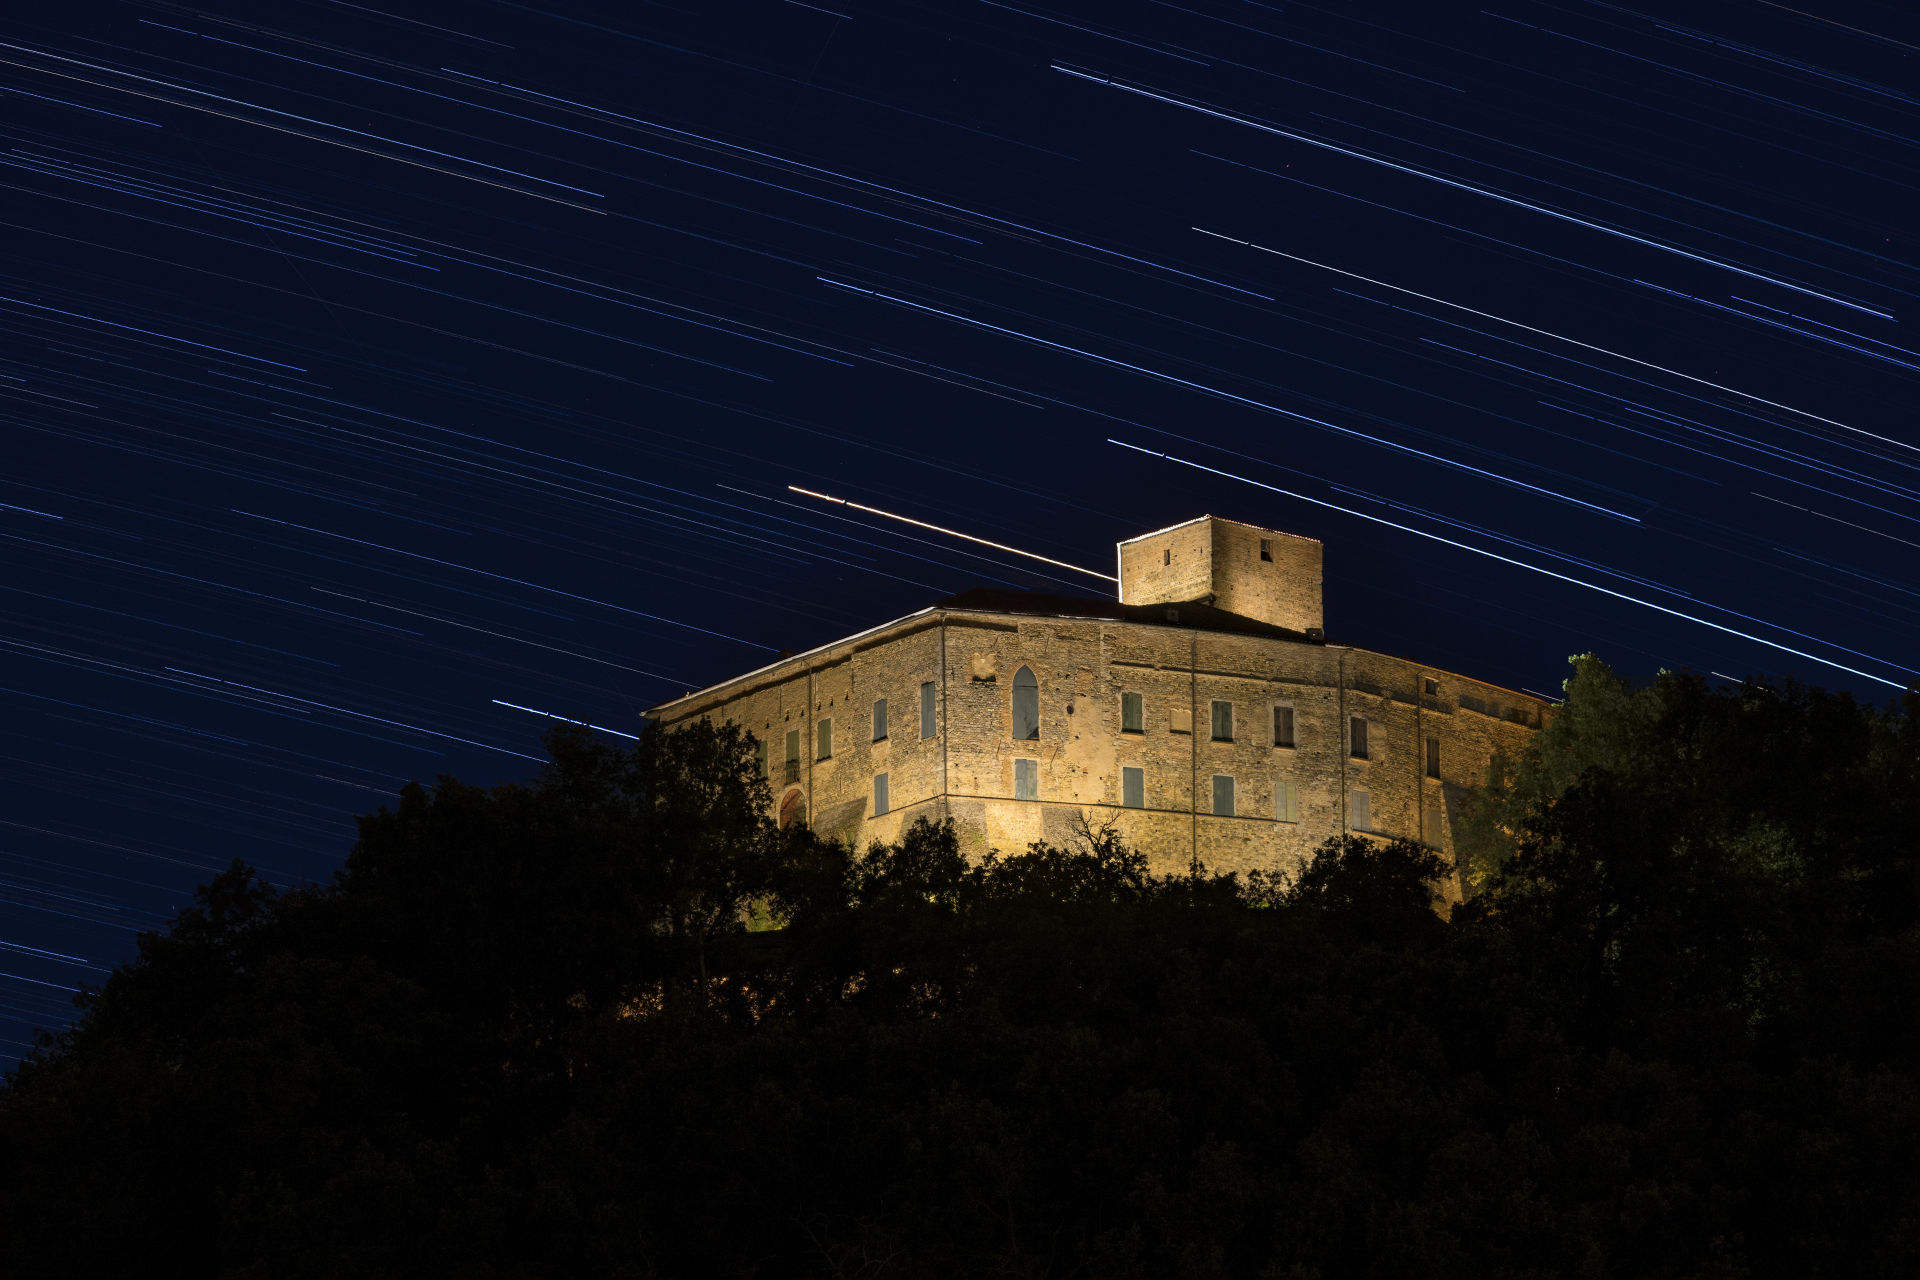 foto: https://upload.wikimedia.org/wikipedia/commons/1/15/Castello_di_Bianello_sotto_le_scie_stellari.jpg